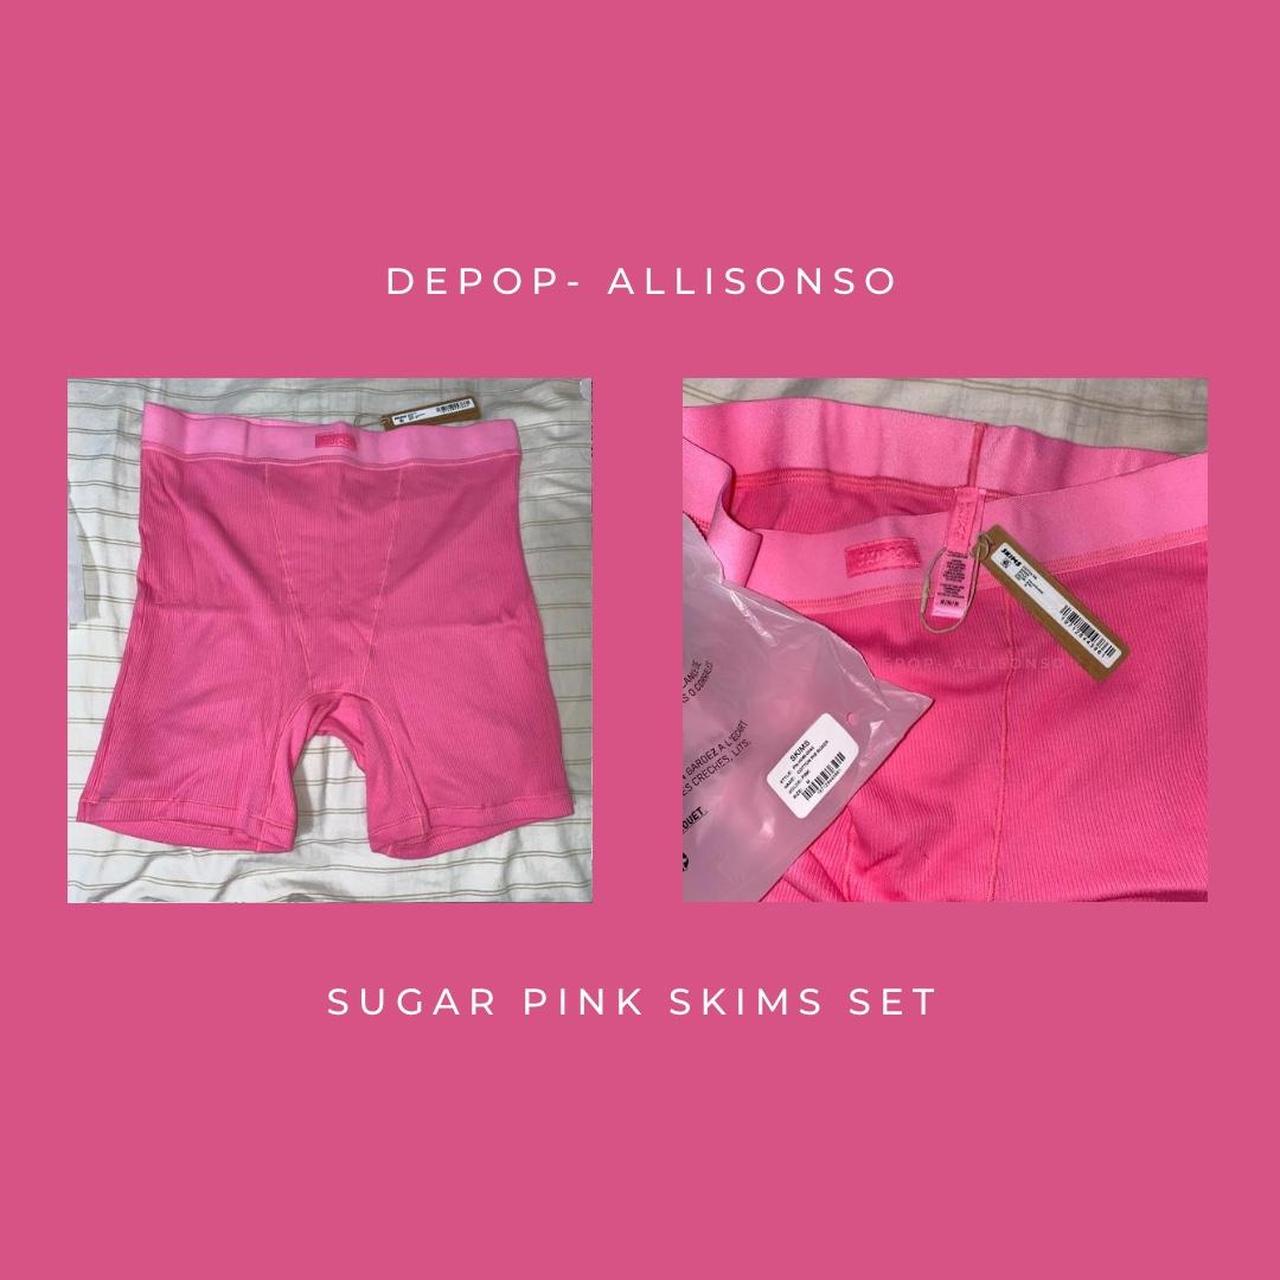 SKIMS, Intimates & Sleepwear, Skims Cotton Rib Tank Size M Legging Size Xs  Set In Sugar Pink Nwt